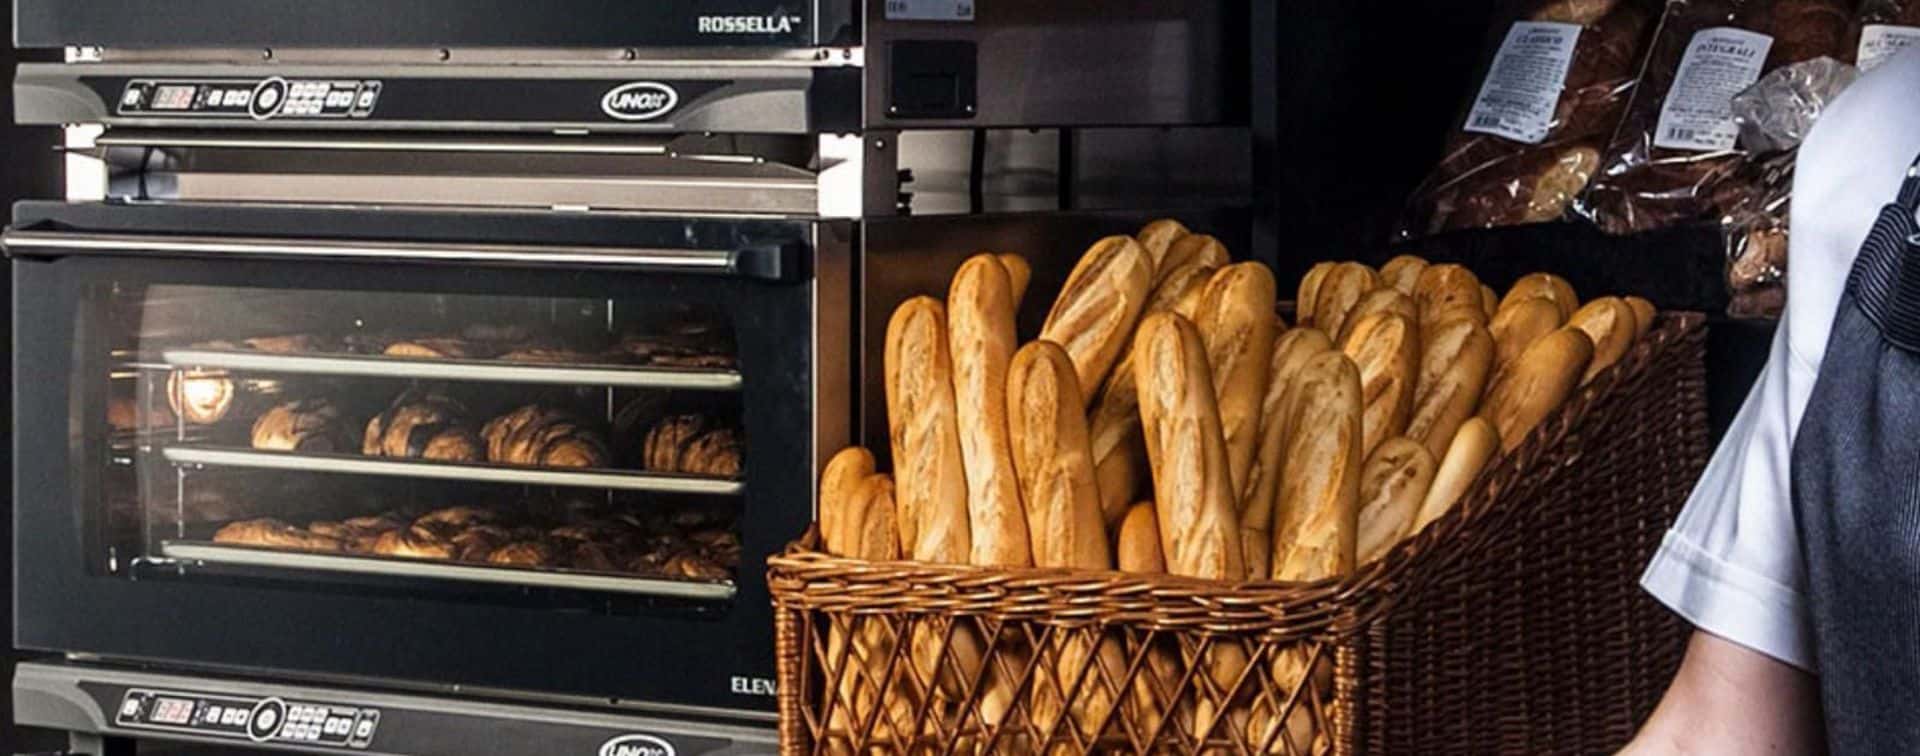 Los panaderos de zona oeste rechazan las medidas del gobierno por el alza de los precios